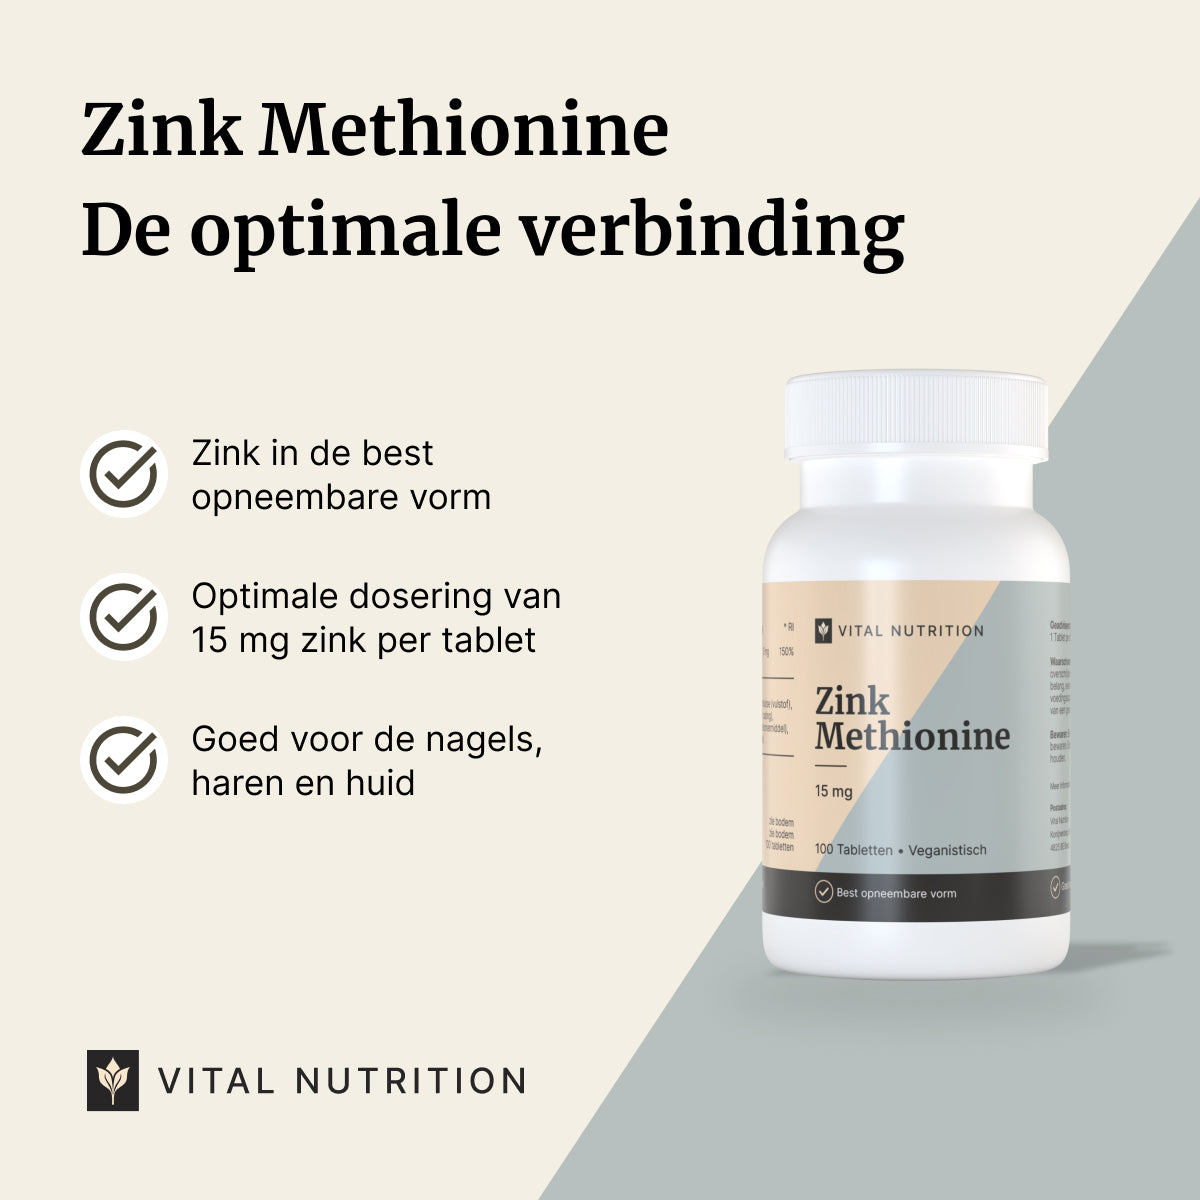 Zink Methionine USPs van Vital Nutrition